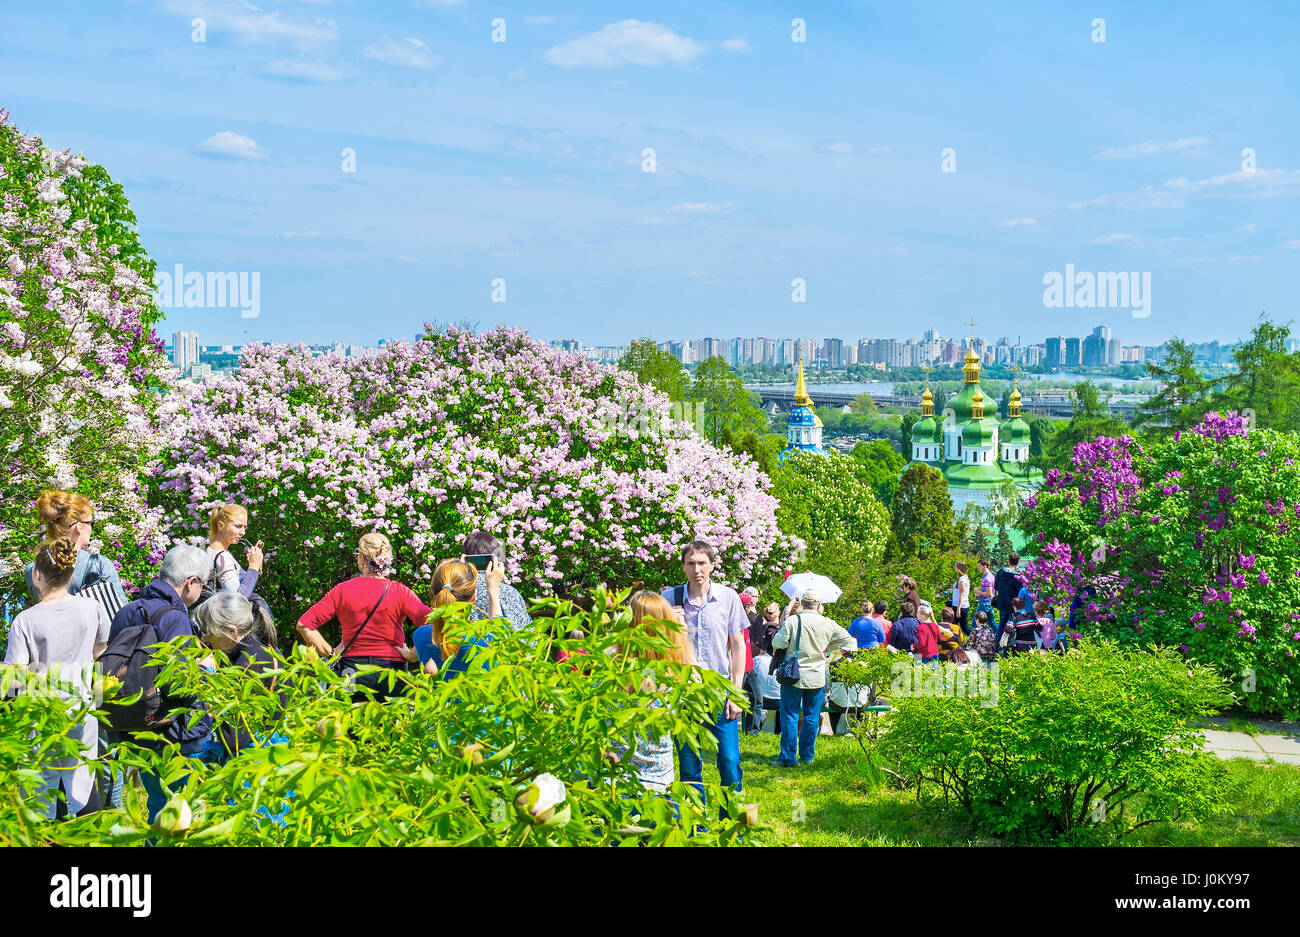 KIEV, UKRAINE - Mai 2, 2016 : Les Visiteurs du jardin botanique Jardin lilas aller à l'intérieur pour profiter de l'arôme de fleurs et très belle vue sur la verdure du jardin, o Banque D'Images